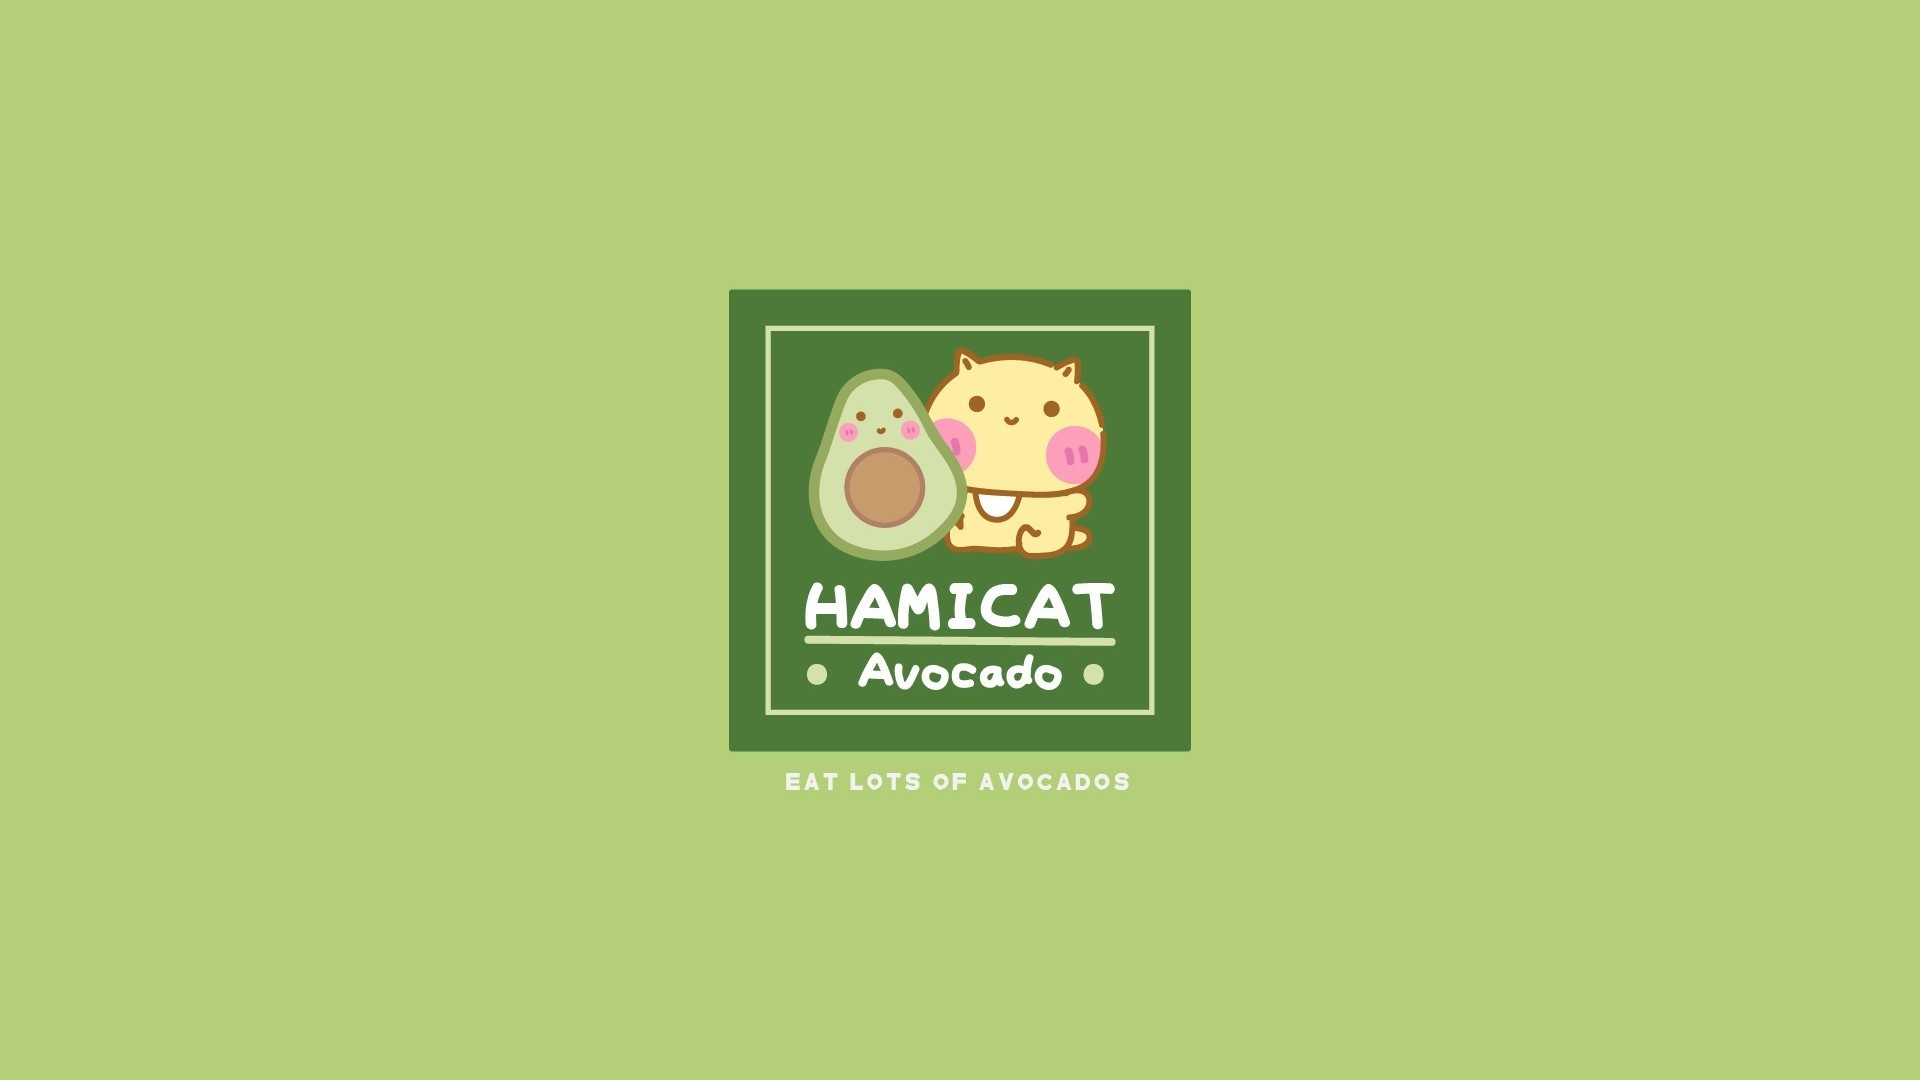 Hamicat哈咪猫牛油果系列卡通图片壁纸